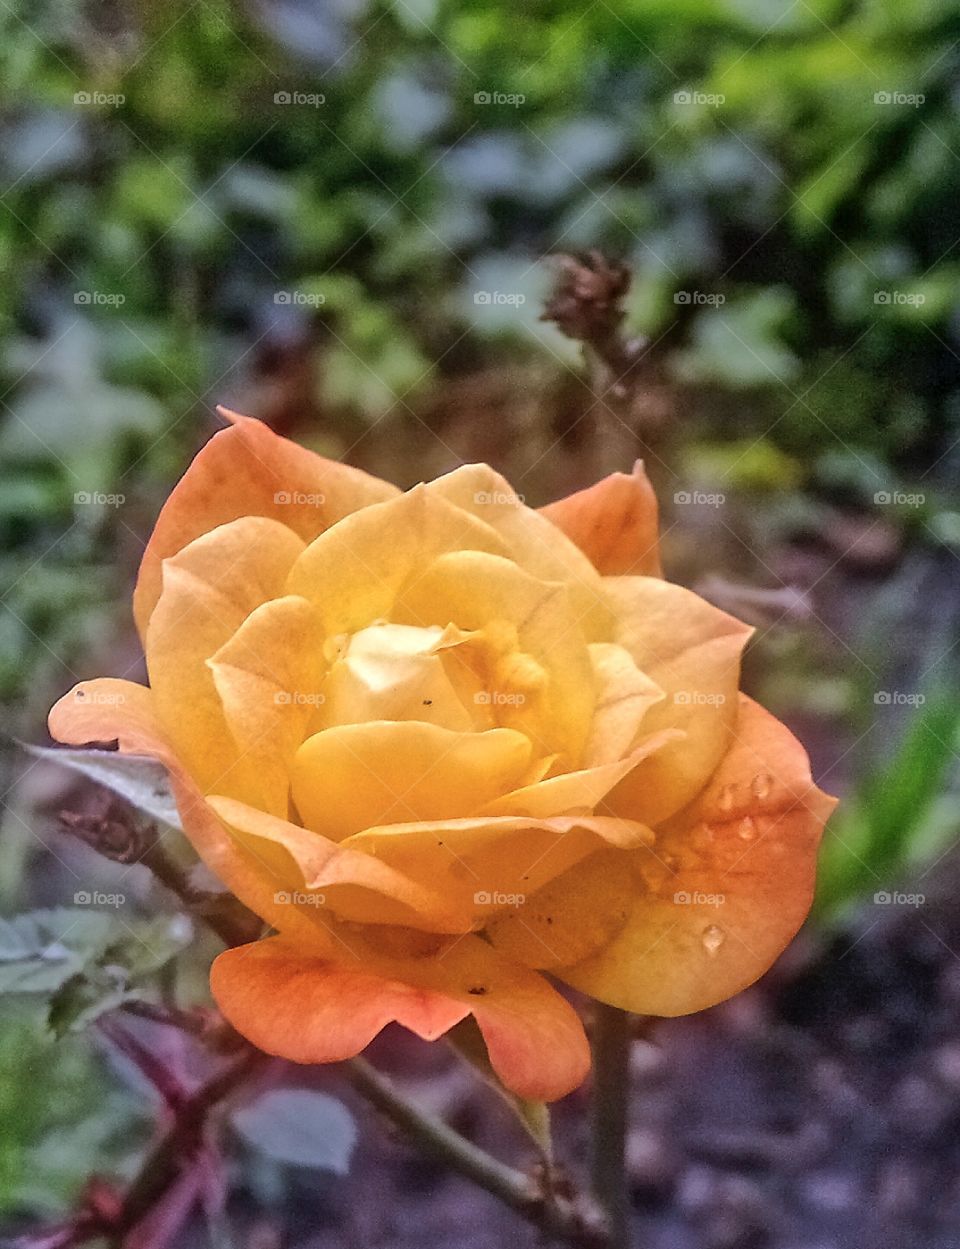 Rose 